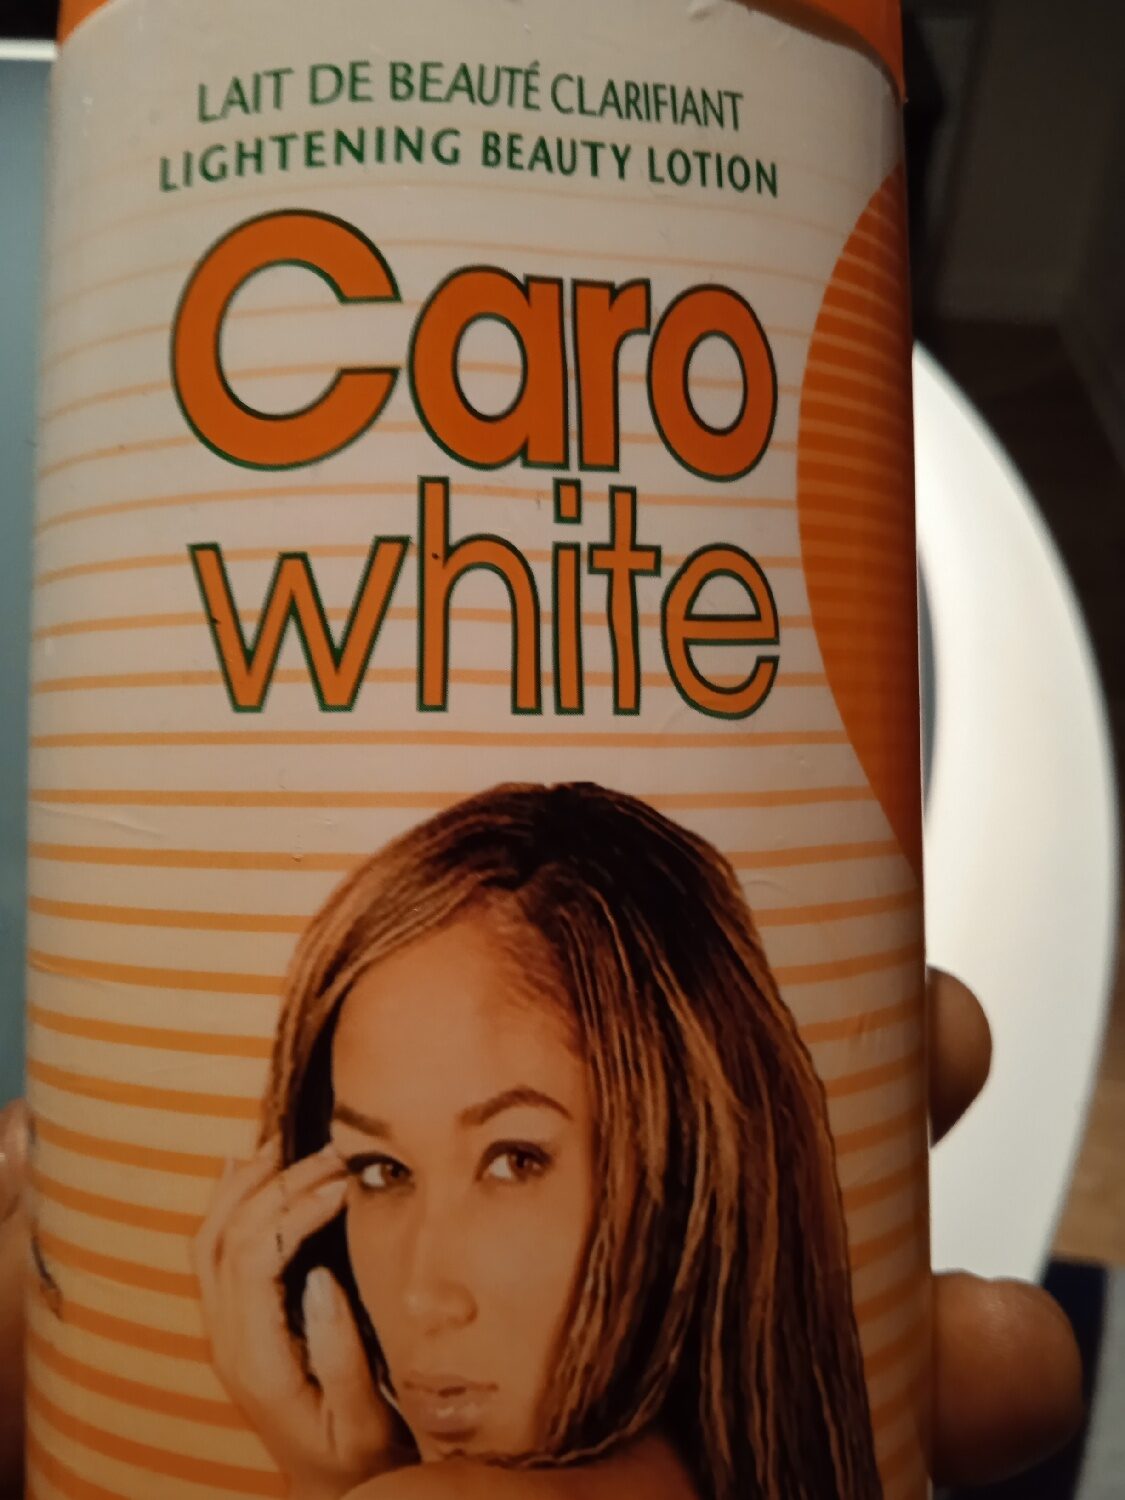 Caro white - Product - xx